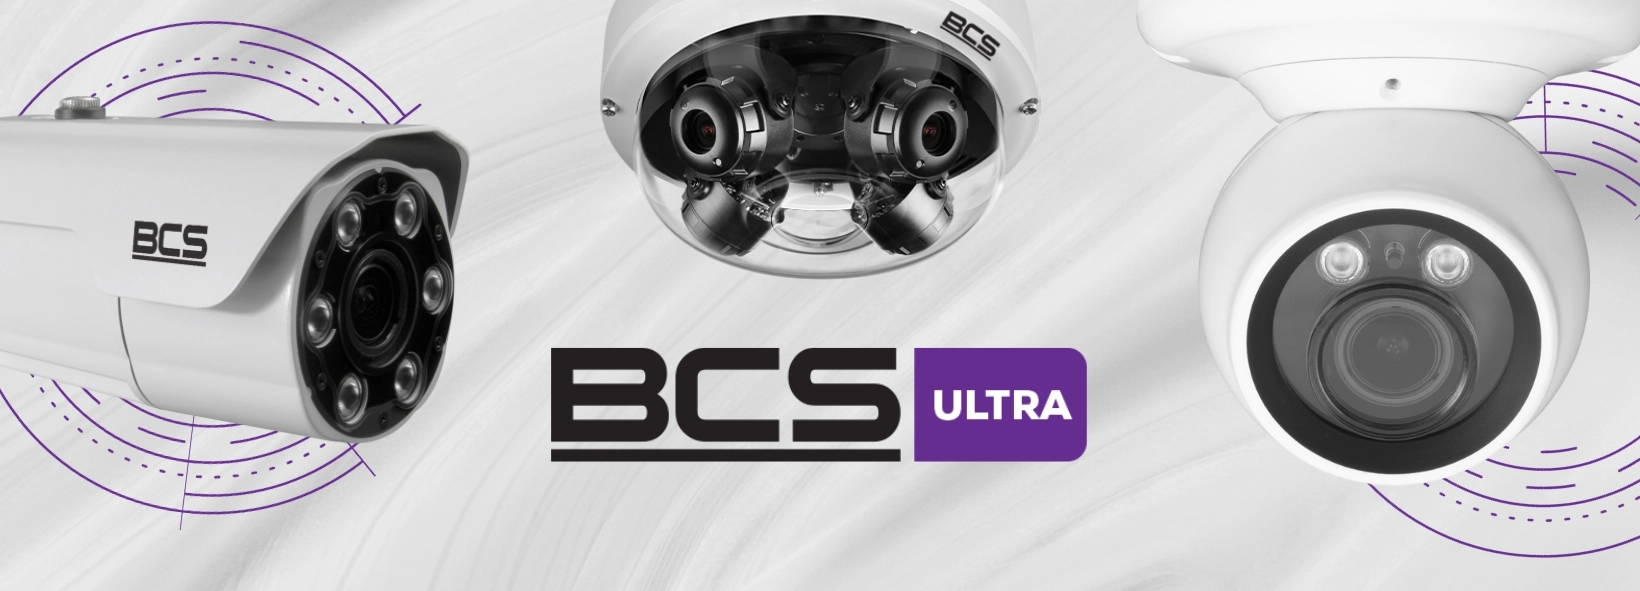 Nowa seria urządzeń BCS Ultra